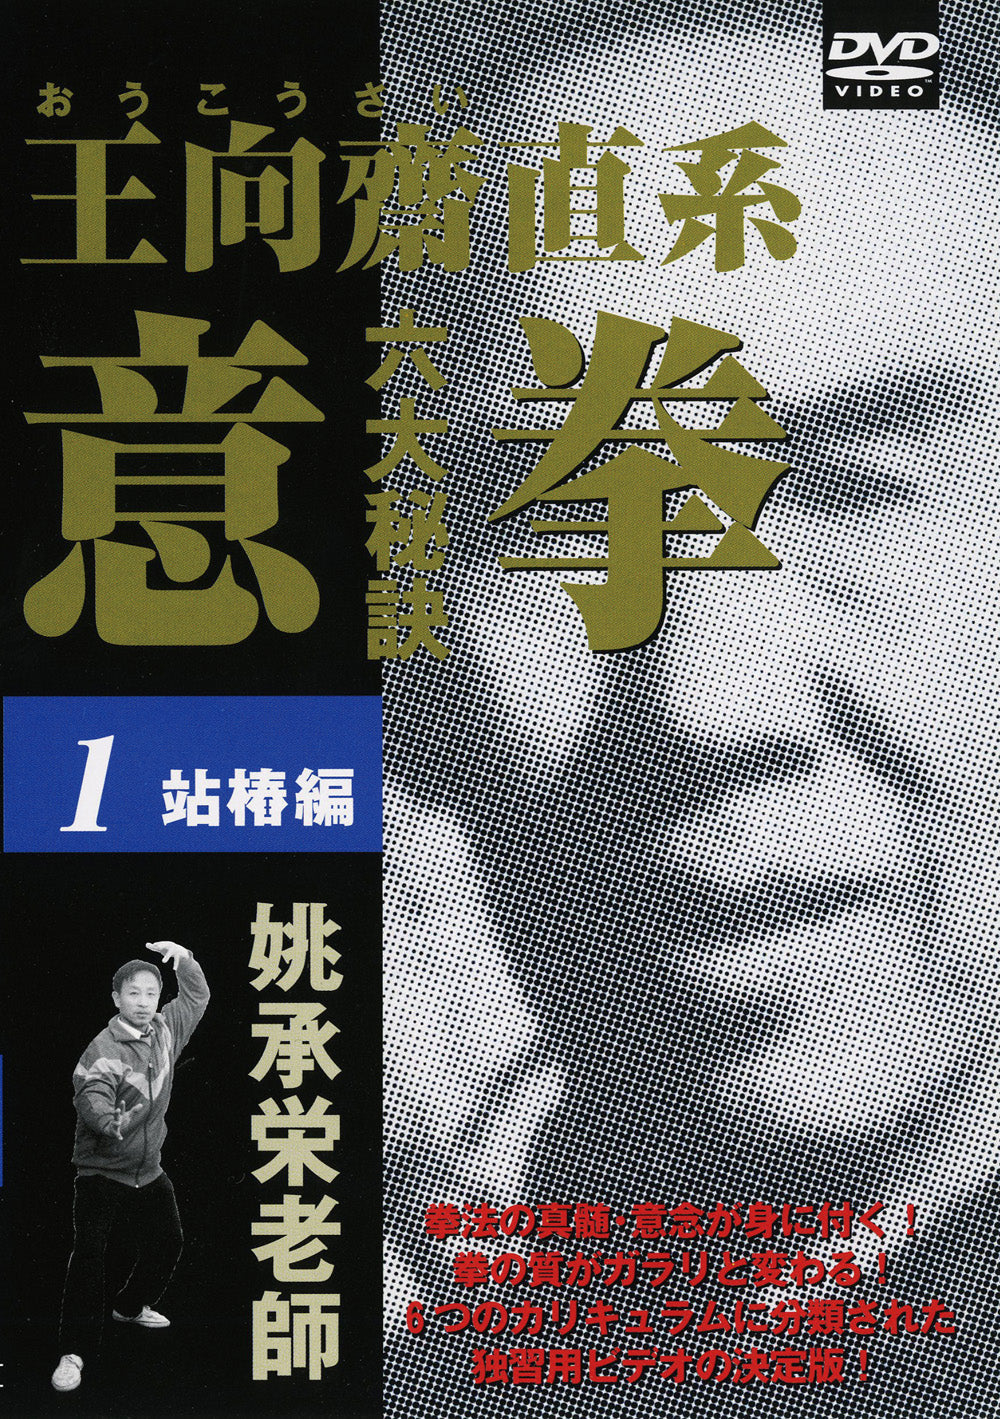 Six Great Secrets of Yiquan DVD 1 by Tao Shouei